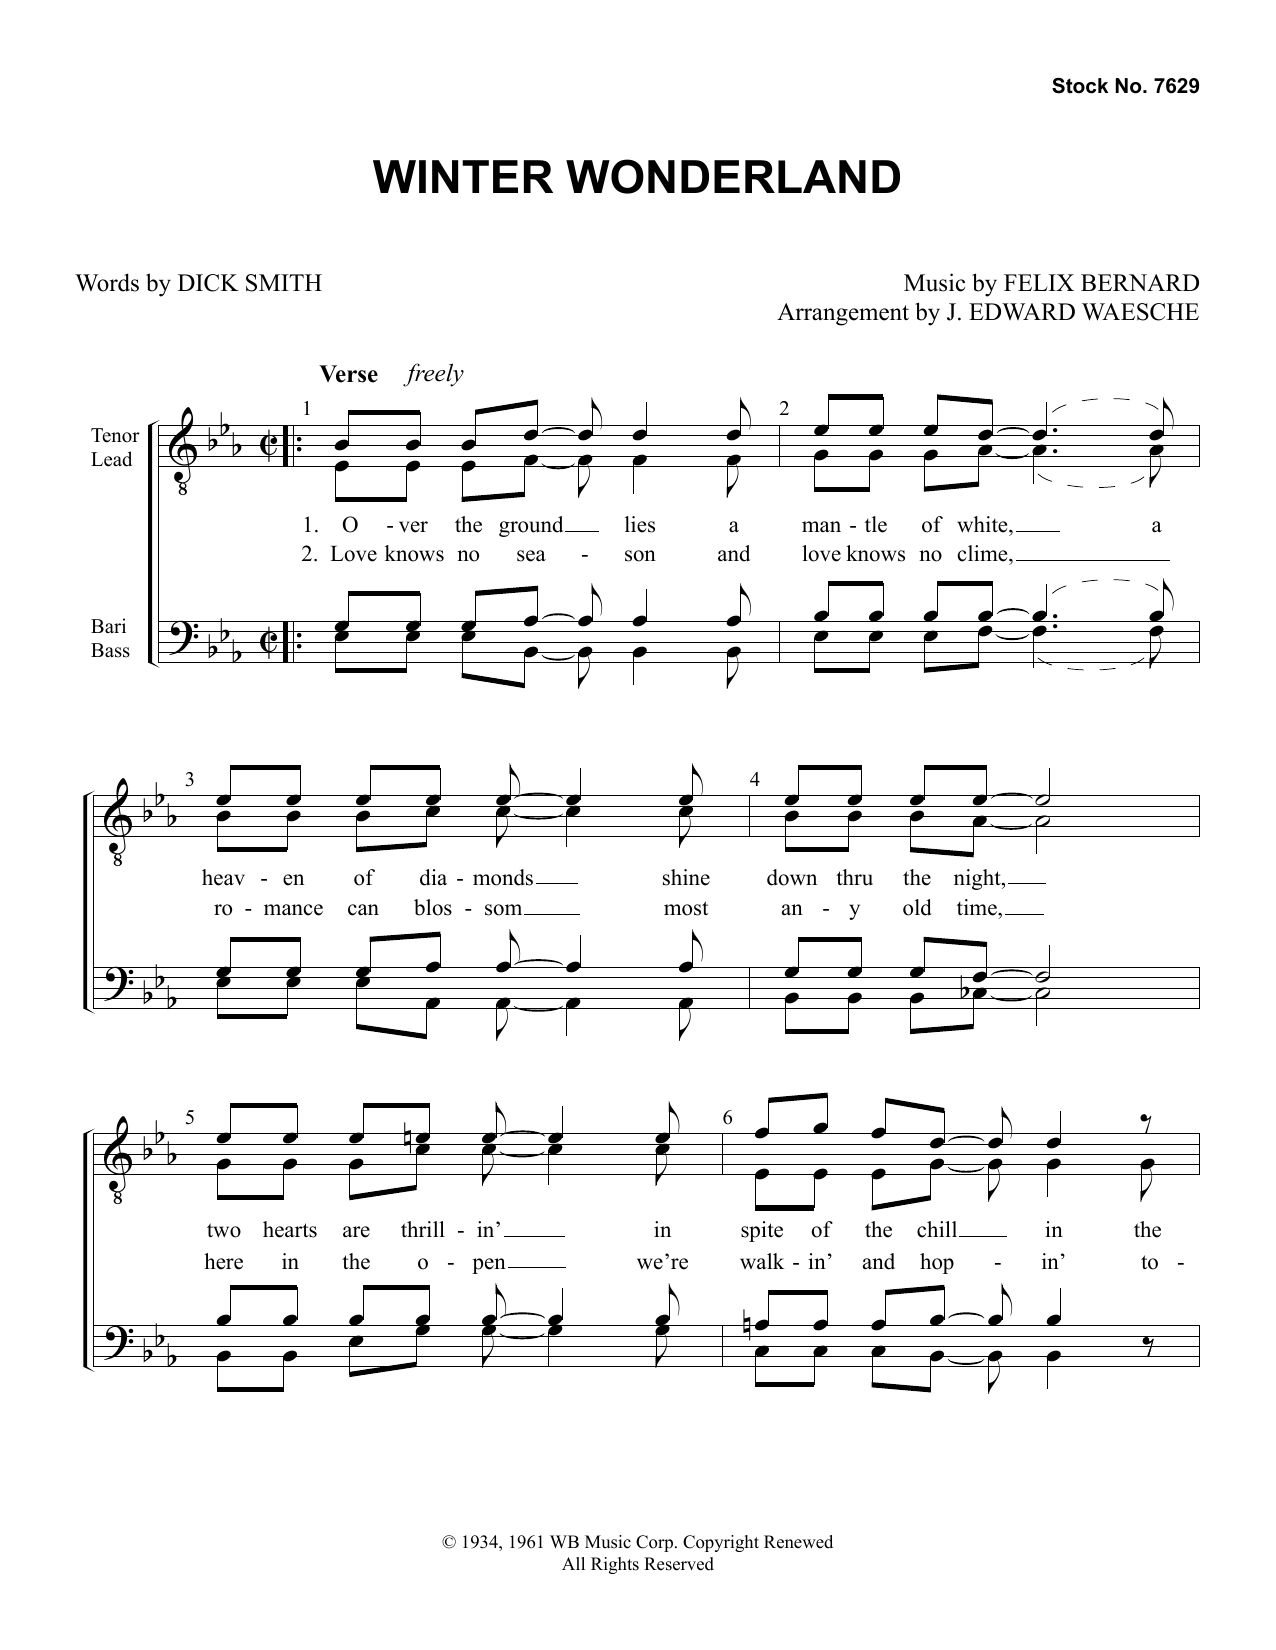 Dick Smith & Felix Bernard Winter Wonderland (arr. Ed Waesche) Sheet Music Notes & Chords for SATB Choir - Download or Print PDF